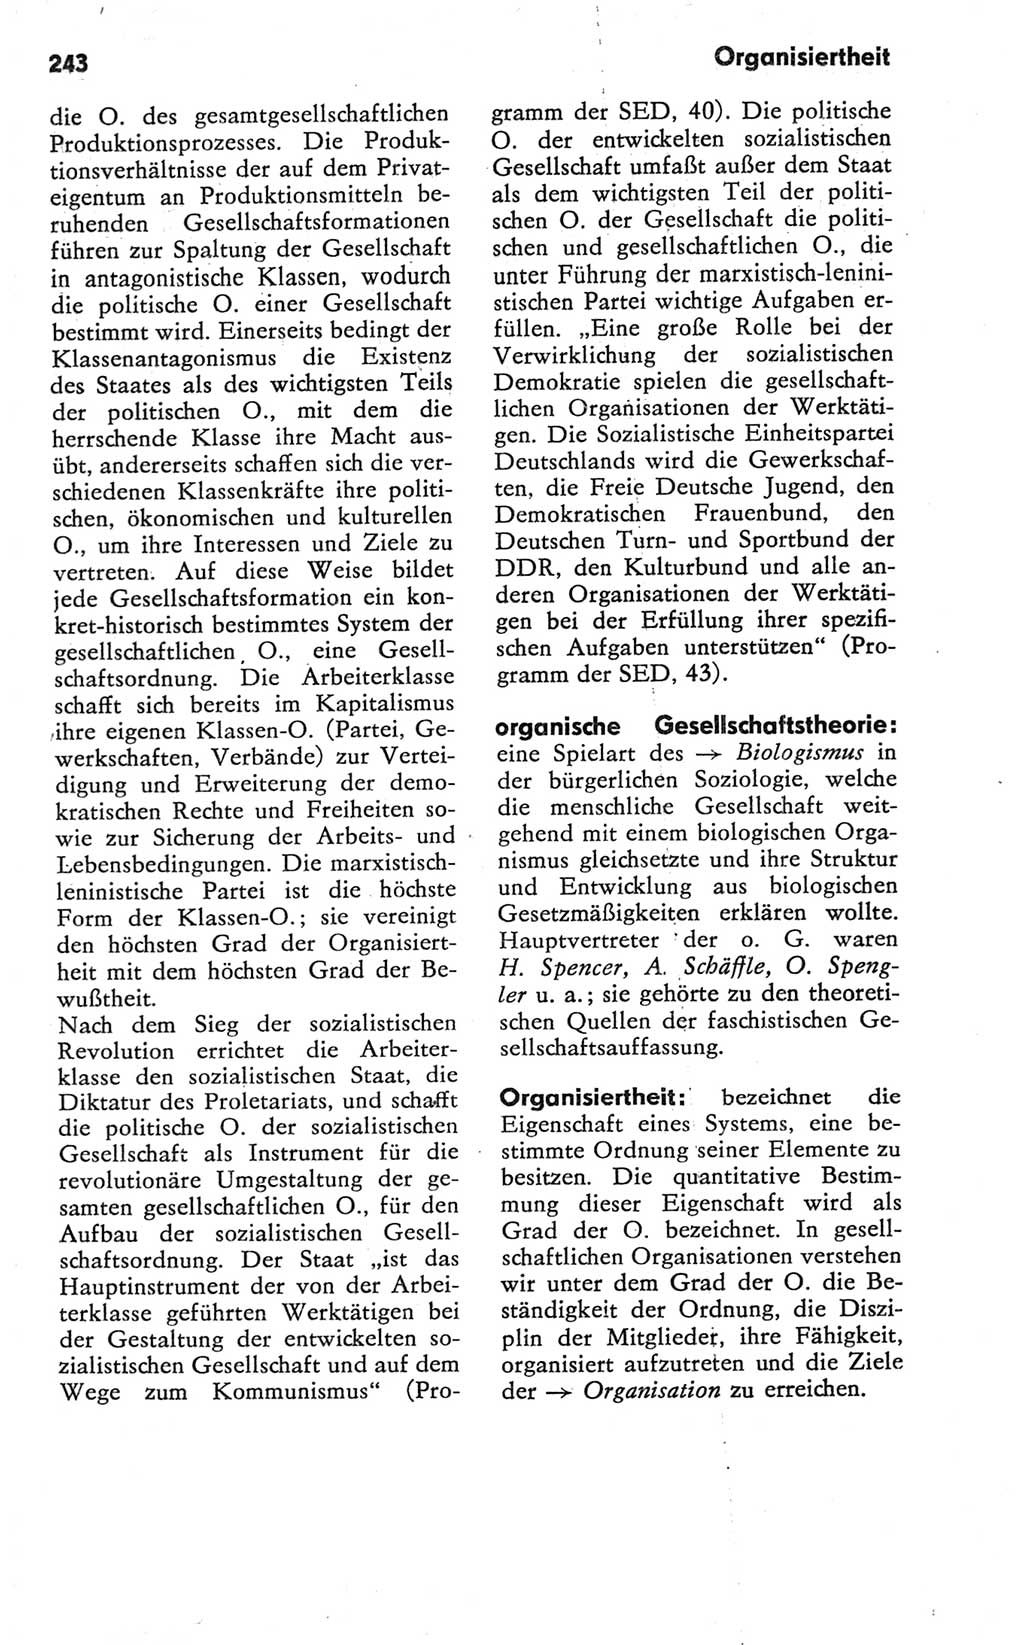 Kleines Wörterbuch der marxistisch-leninistischen Philosophie [Deutsche Demokratische Republik (DDR)] 1981, Seite 243 (Kl. Wb. ML Phil. DDR 1981, S. 243)